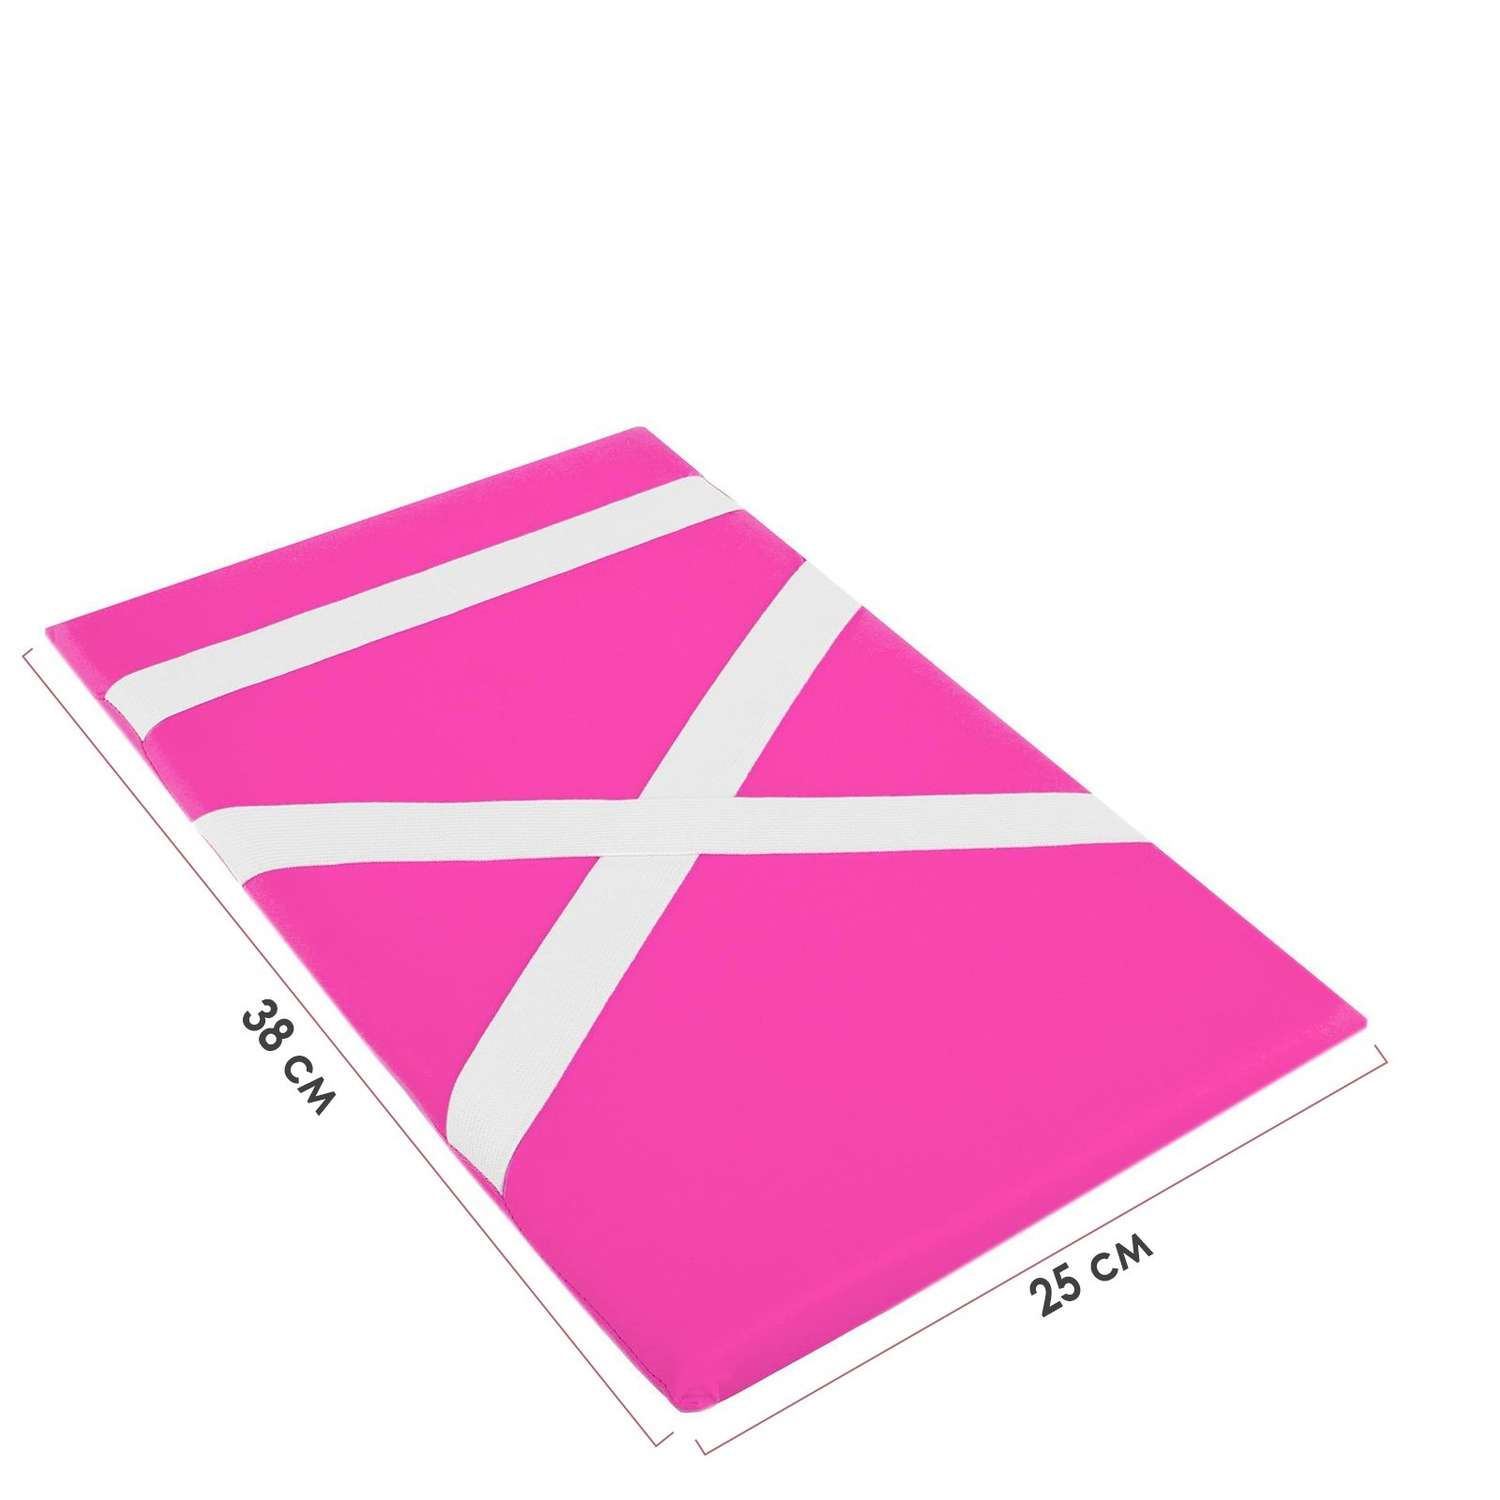 Защита спины гимнастическая Grace Dance подушка для растяжки. лайкра. цвет розовый. 38 х 25 см - фото 1